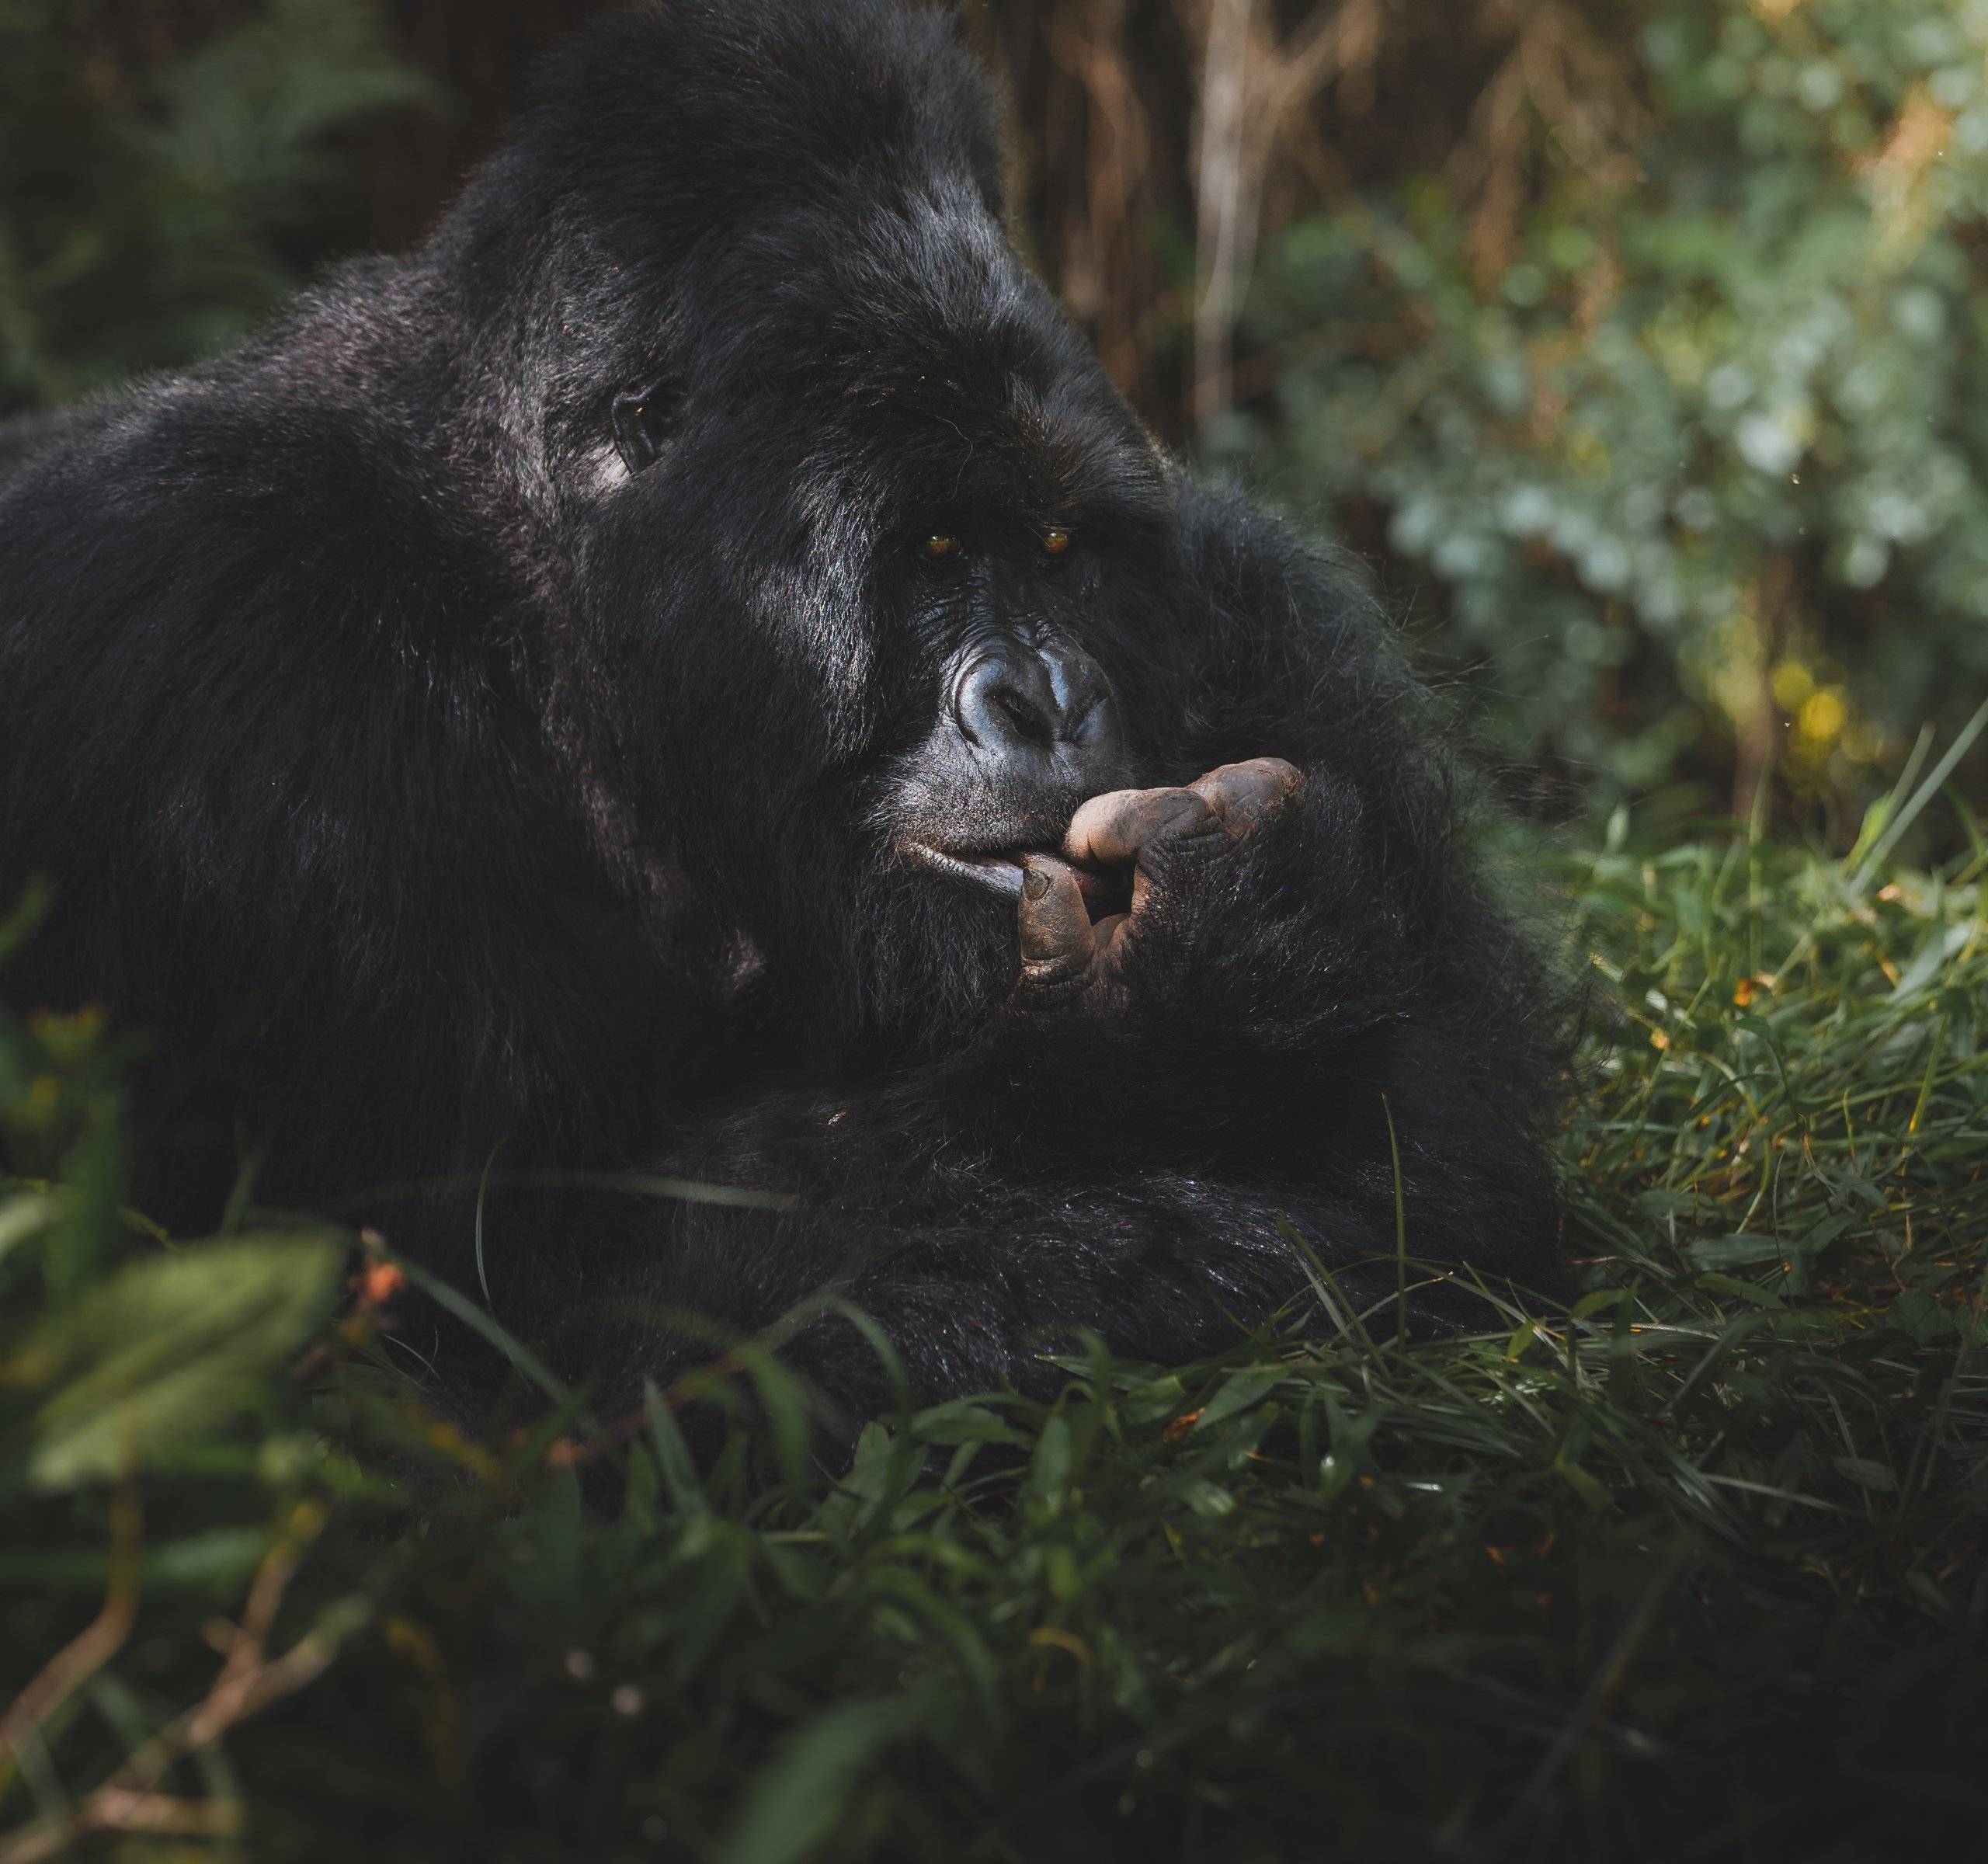 Marche et inoubliable rencontre avec les gorilles des montagnes